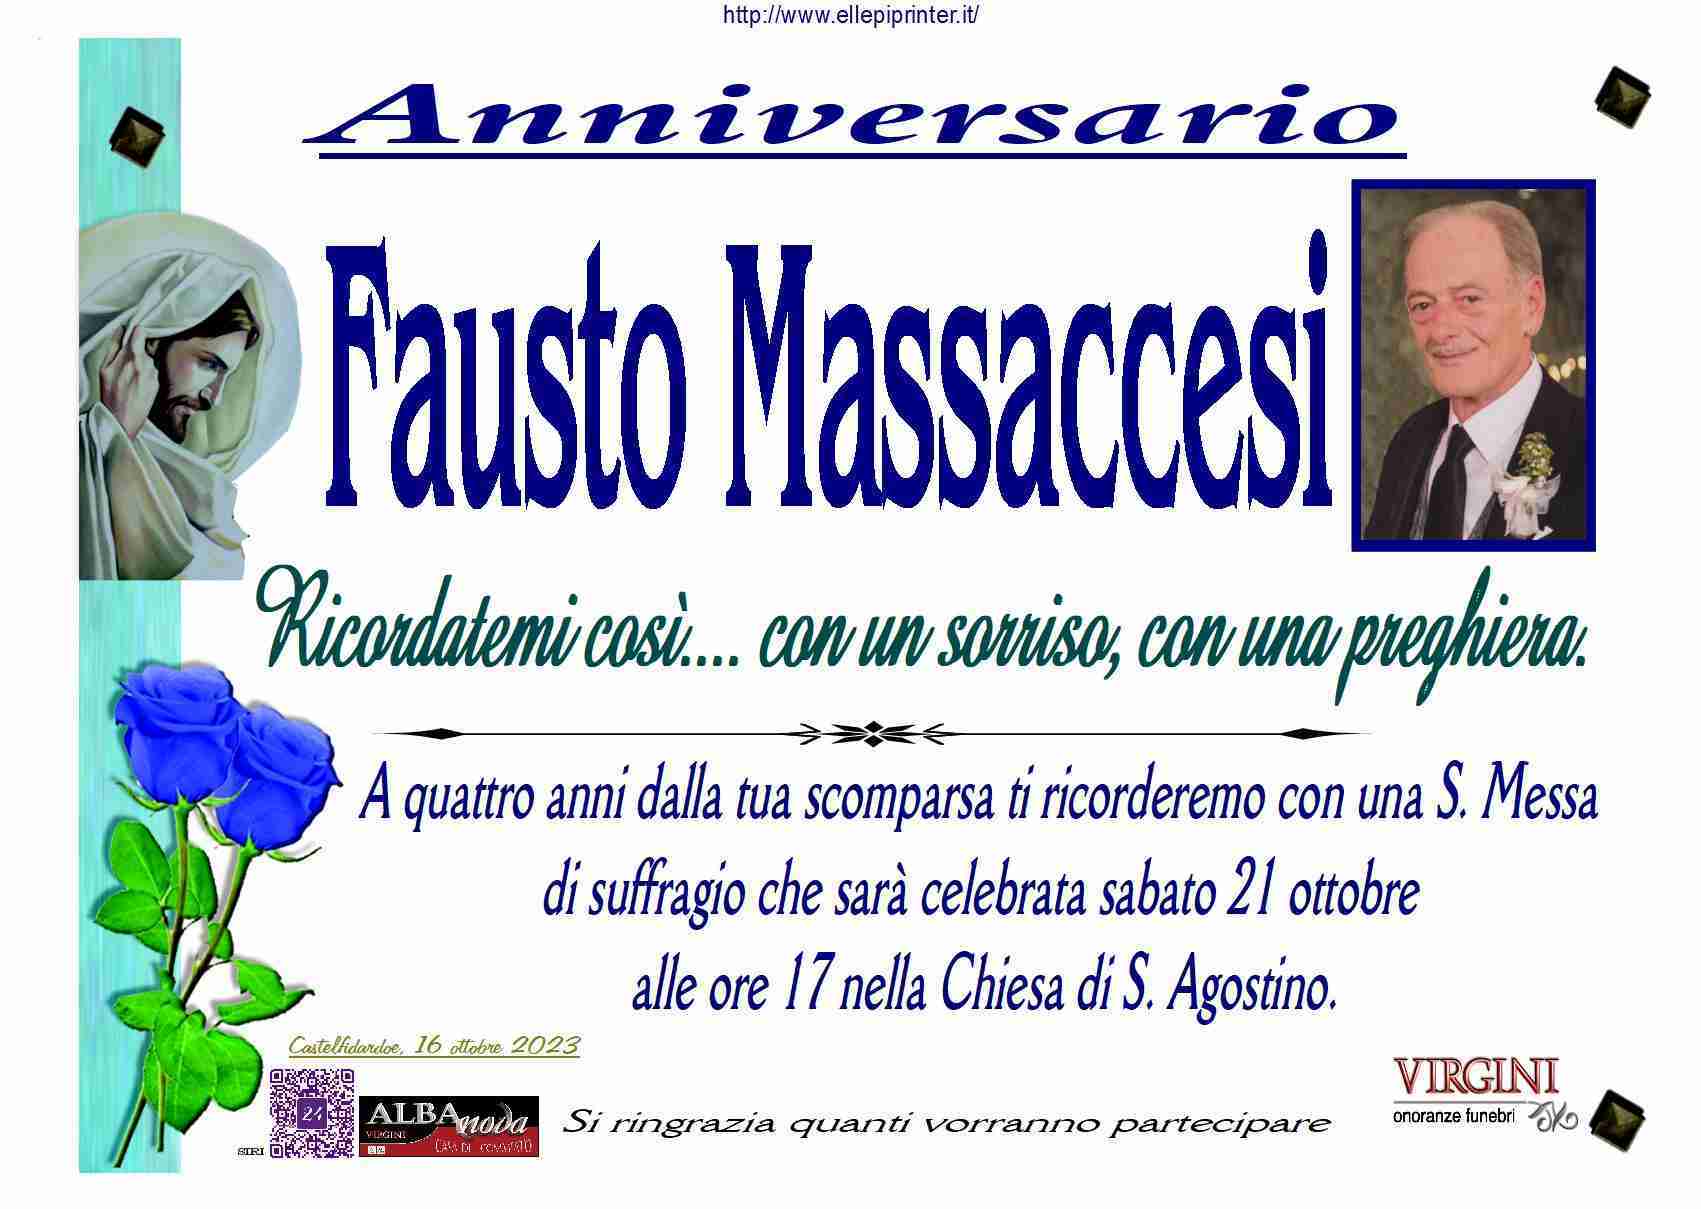 Fausto Massaccesi